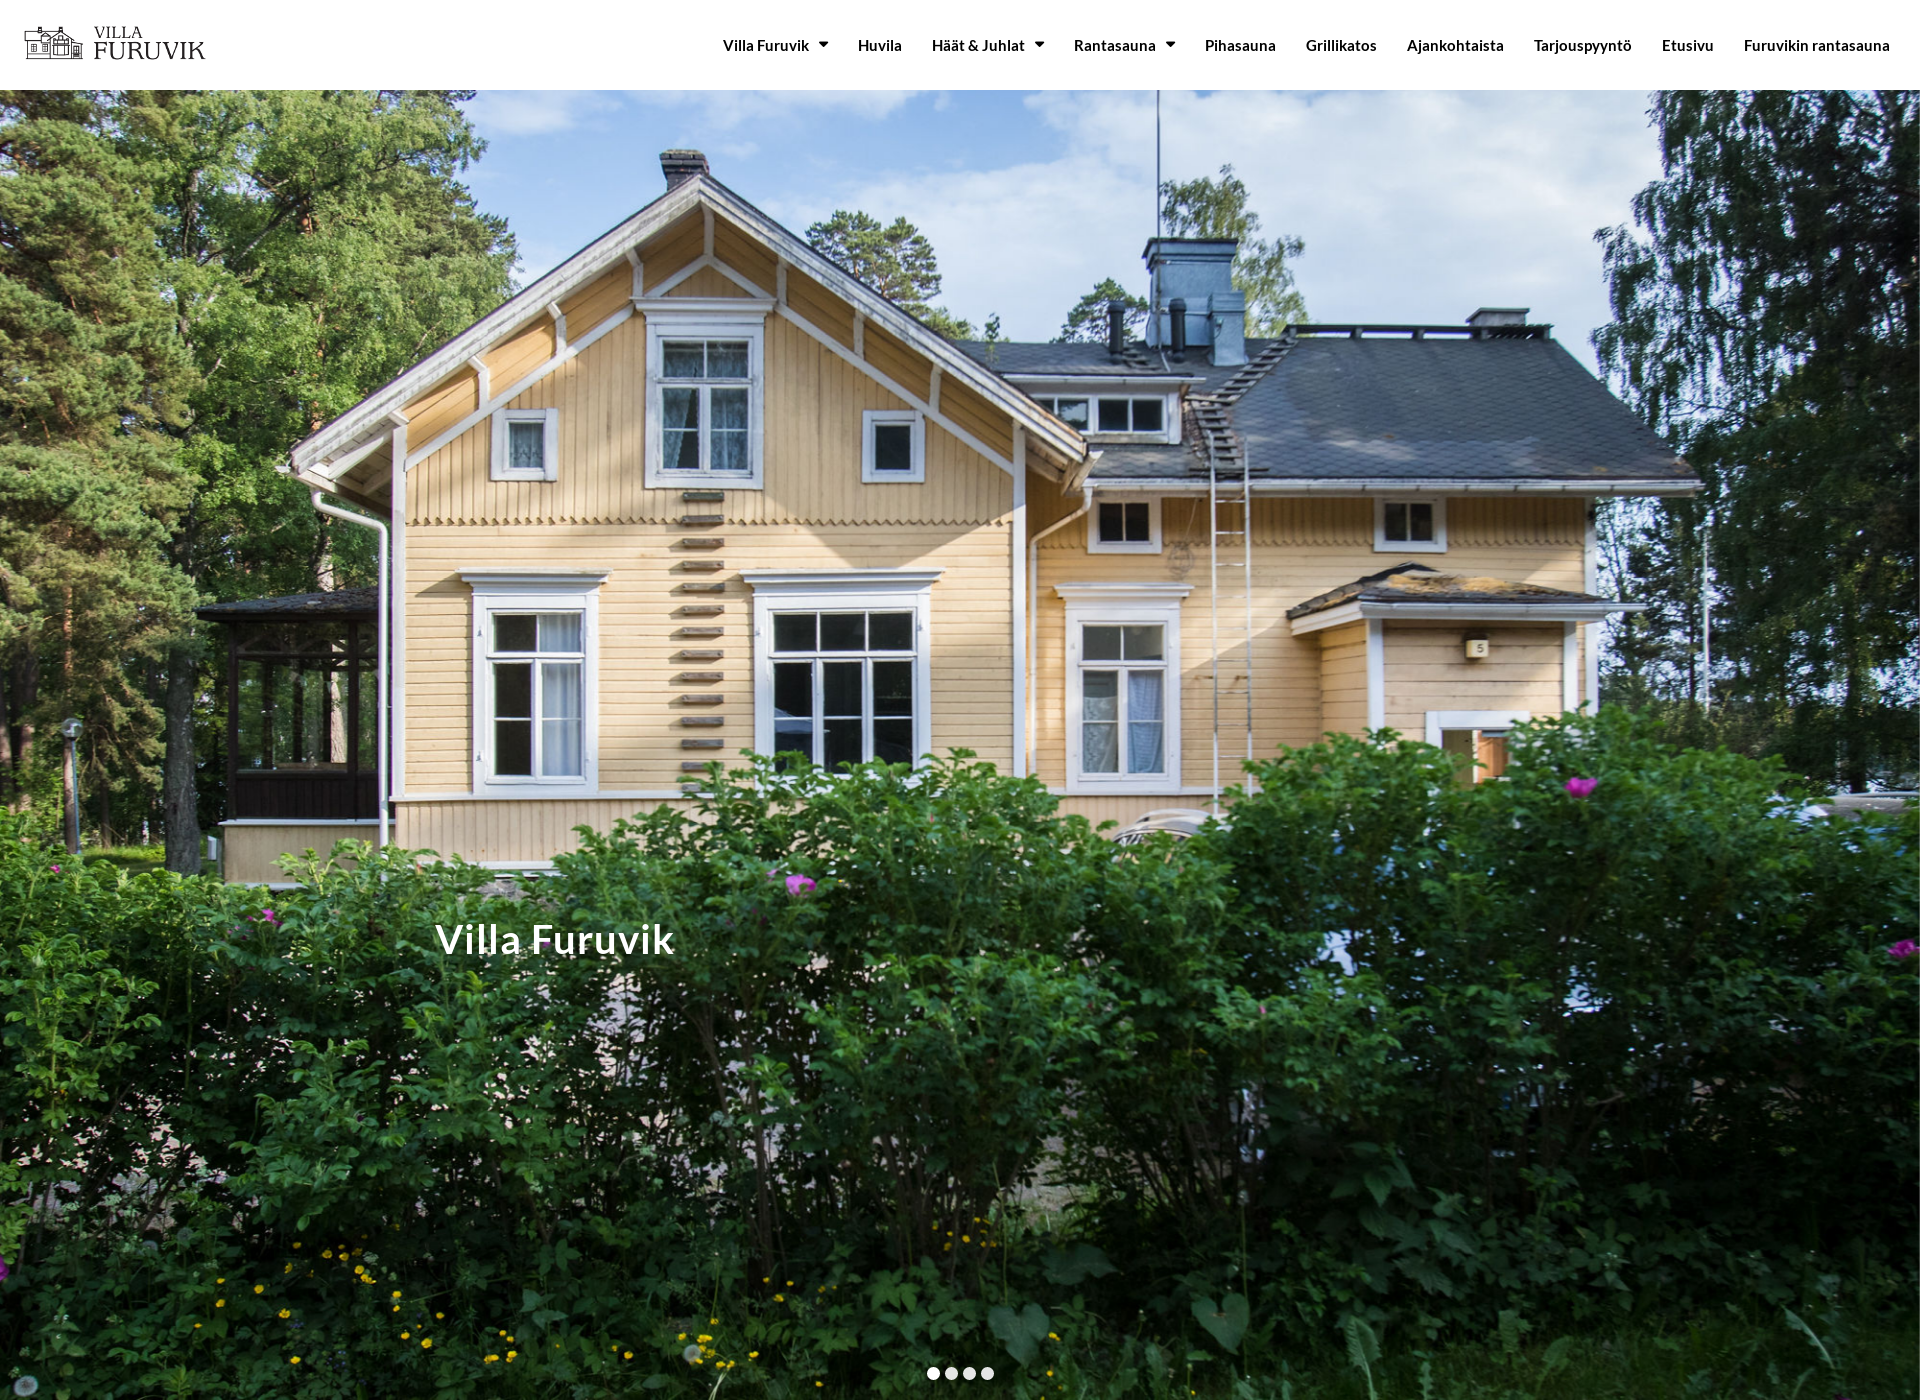 Screenshot for villafuruvik.fi